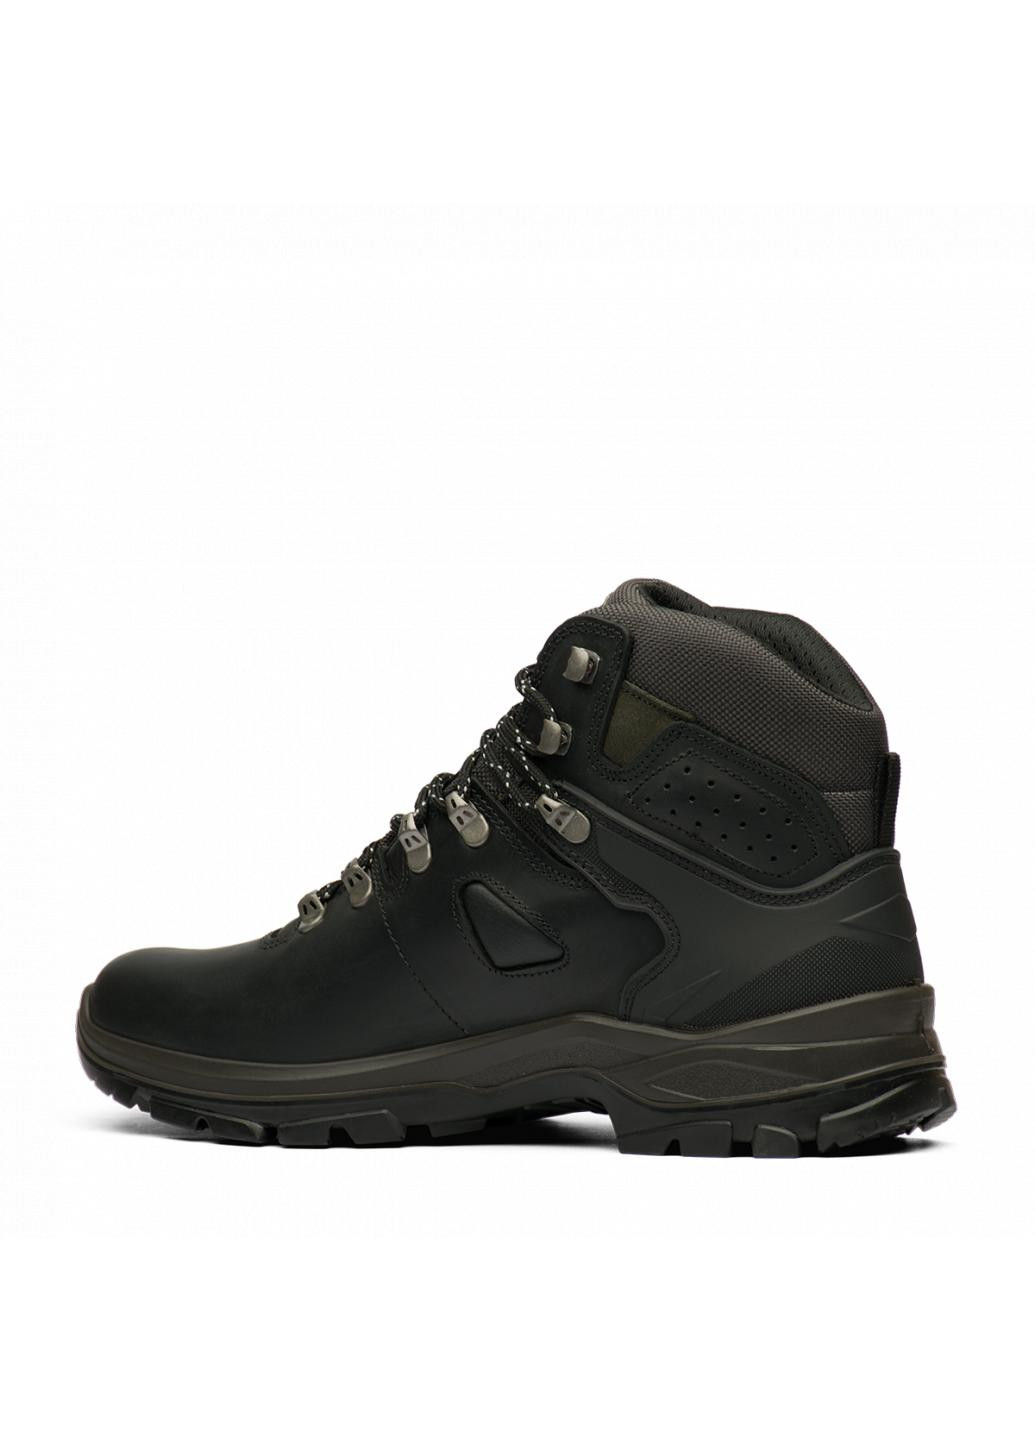 Черные зимние кожаные ботинки 14515-d1 Grisport